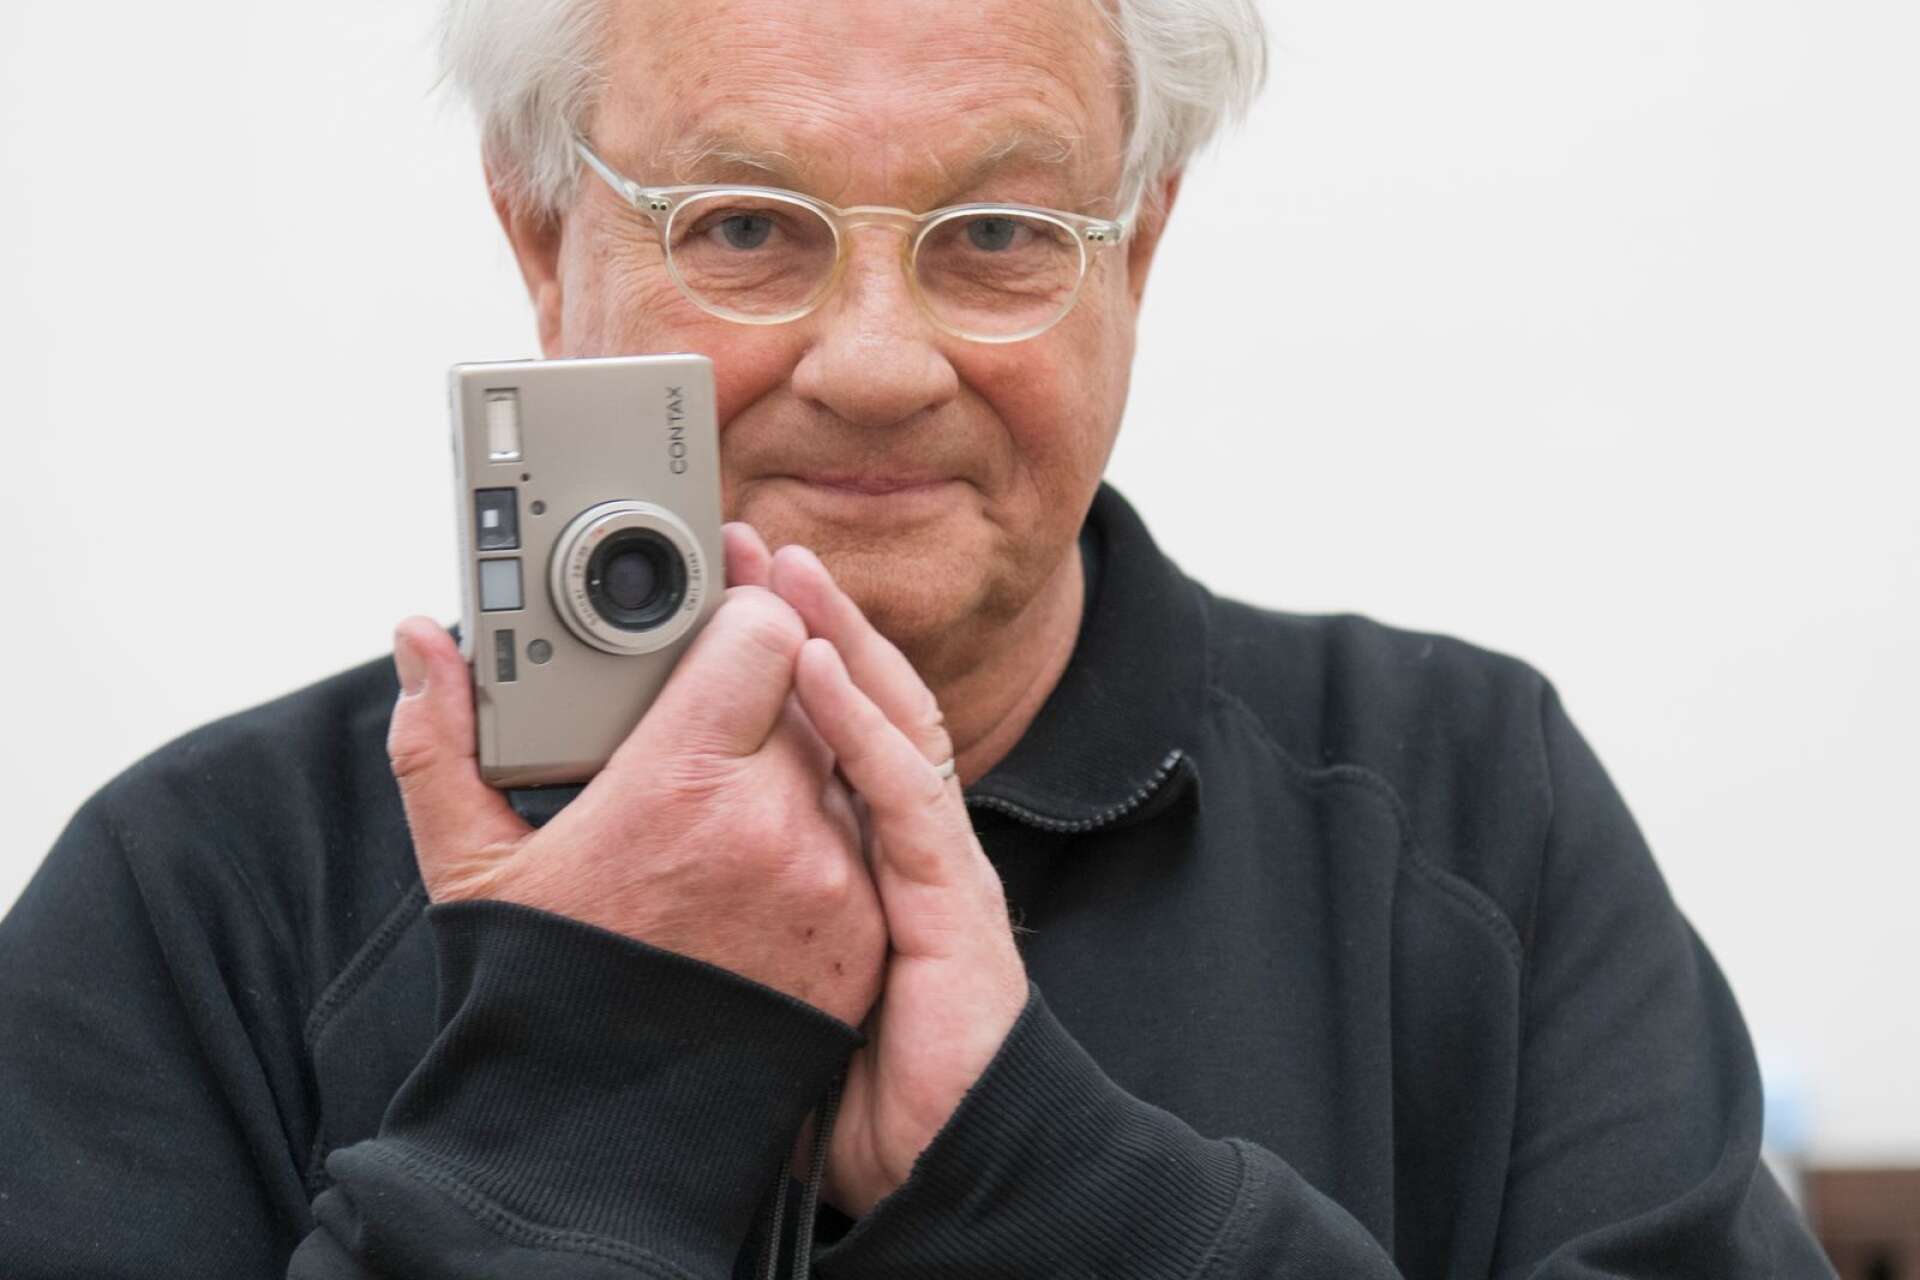 Fotografen Anders Petersen föddes i Solna 1944 och flyttade till Karlstad som 14-åring. Han har fått flera internationella priser och har gett ut flera böcker.